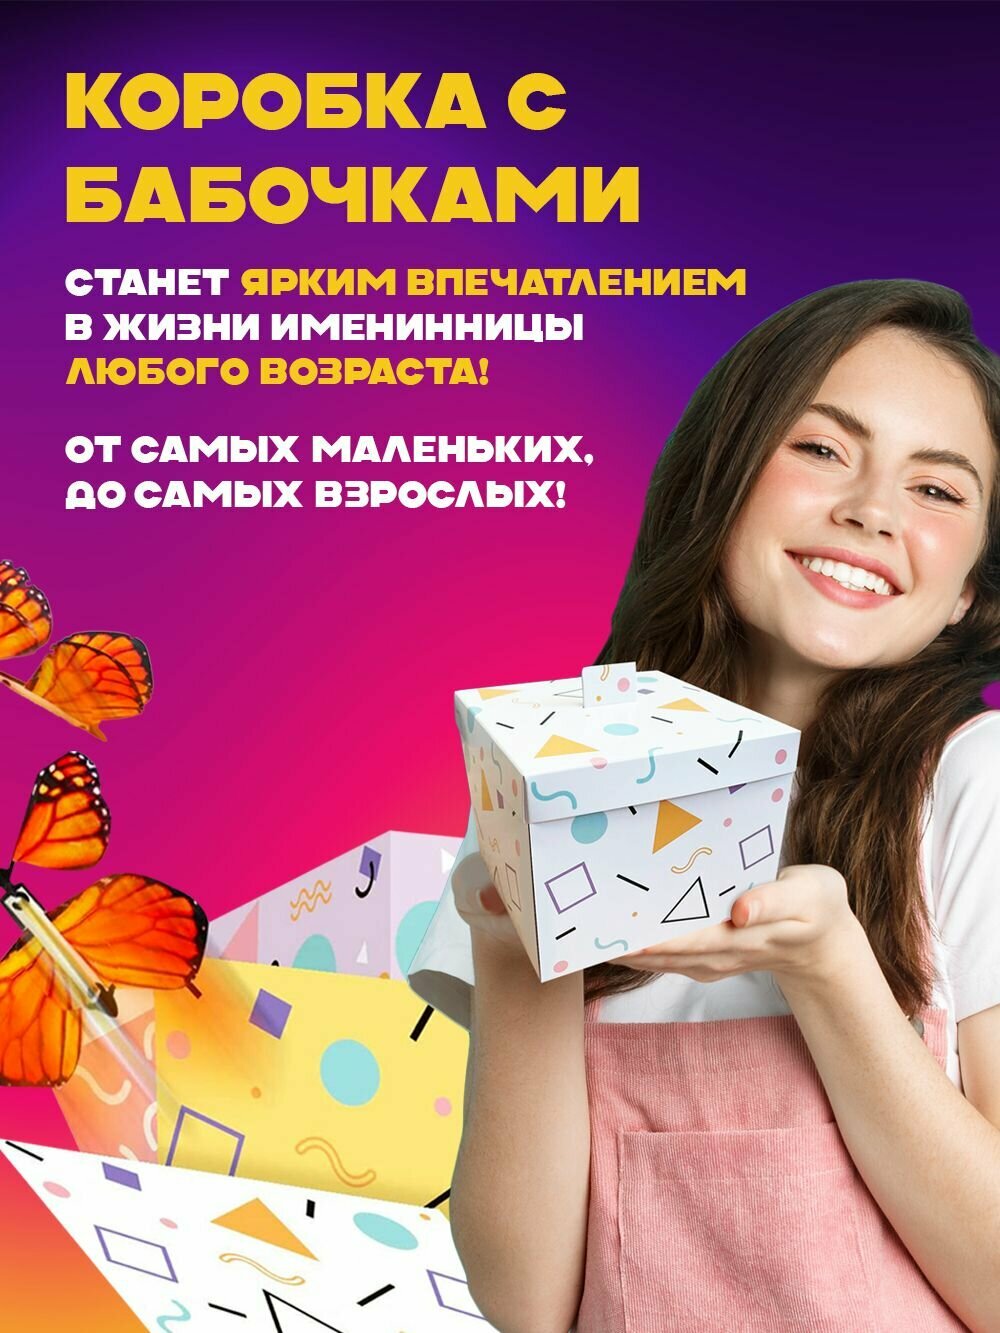 Подарочная БУМ коробка, Упаковка для подарка с летающими бабочками, Сюрприз бокс.